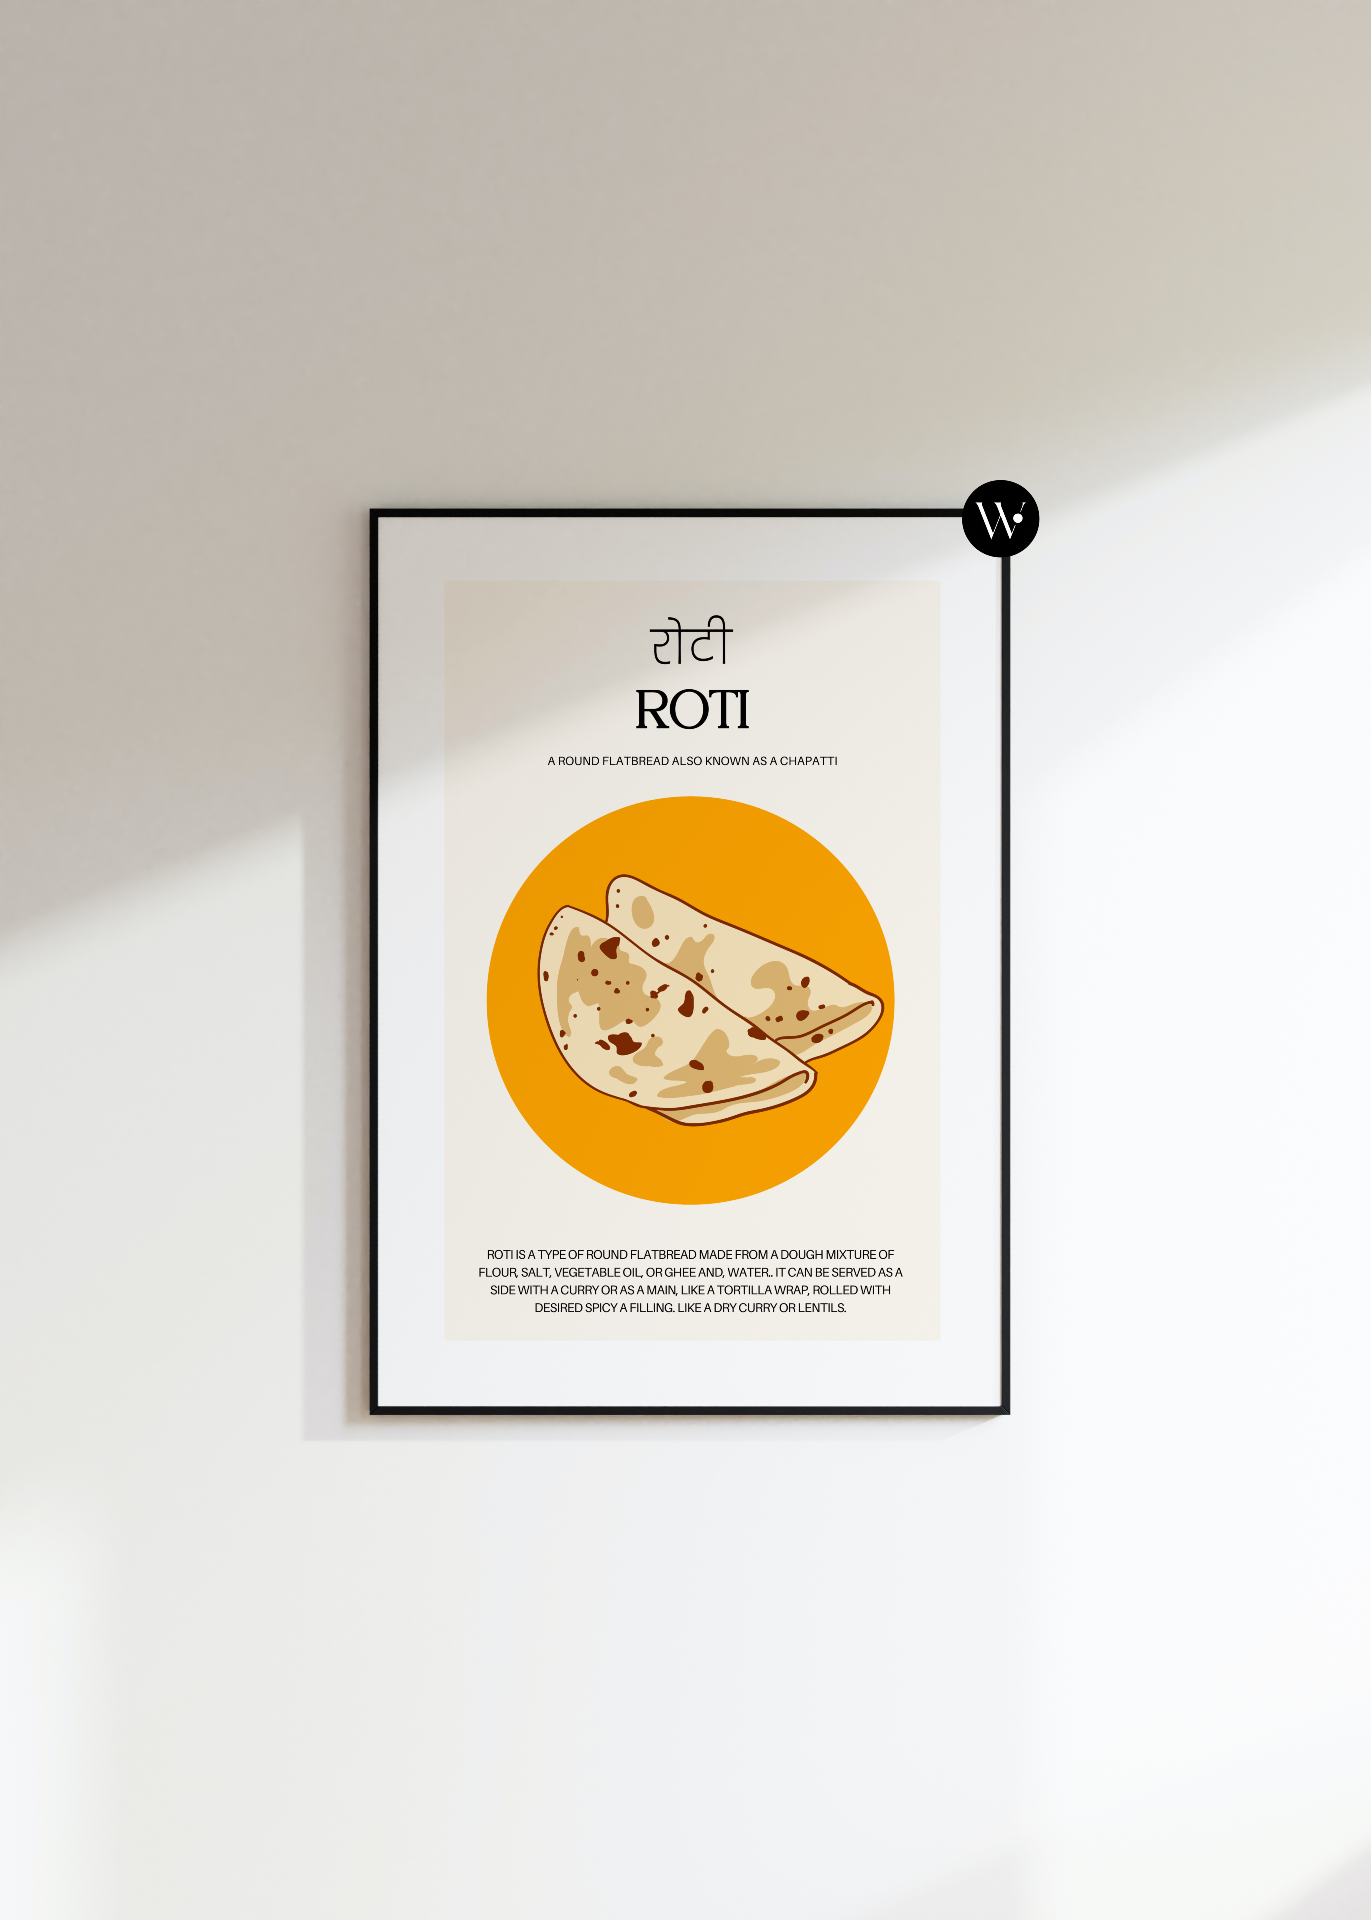 Roti Poster Print